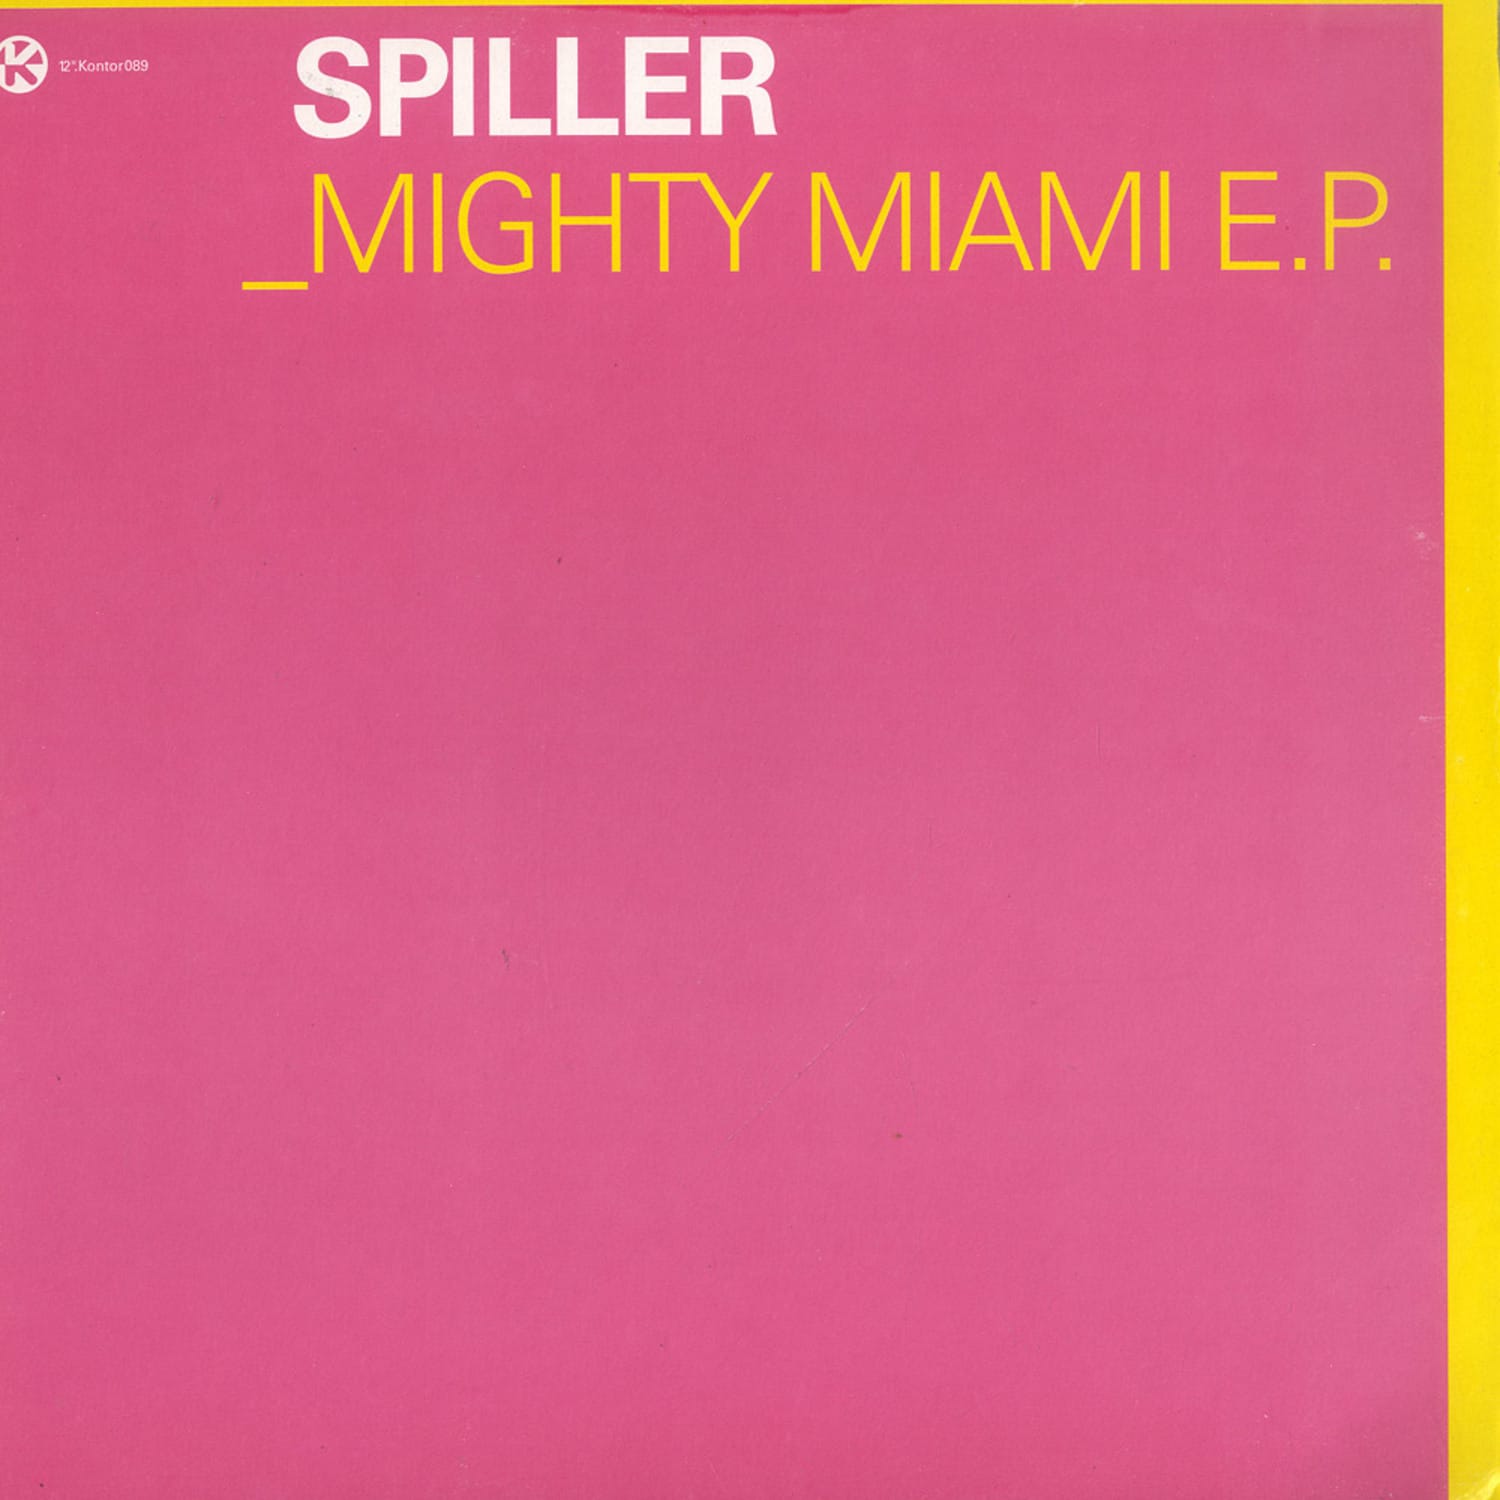 Spiller - MIGHTY MIAMI EP 